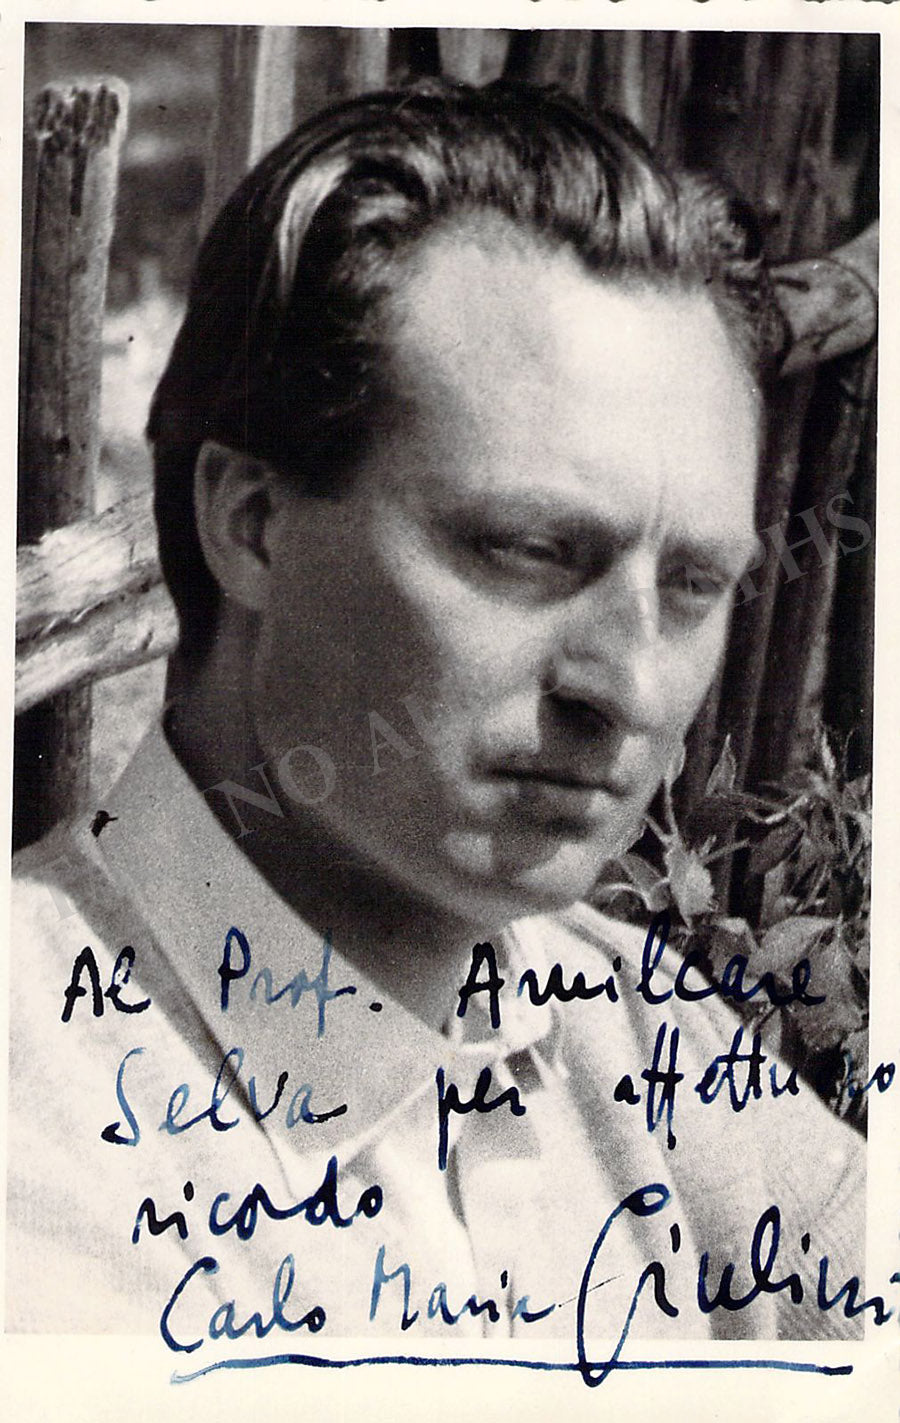 Giulini, Carlo Maria - Signed Photograph